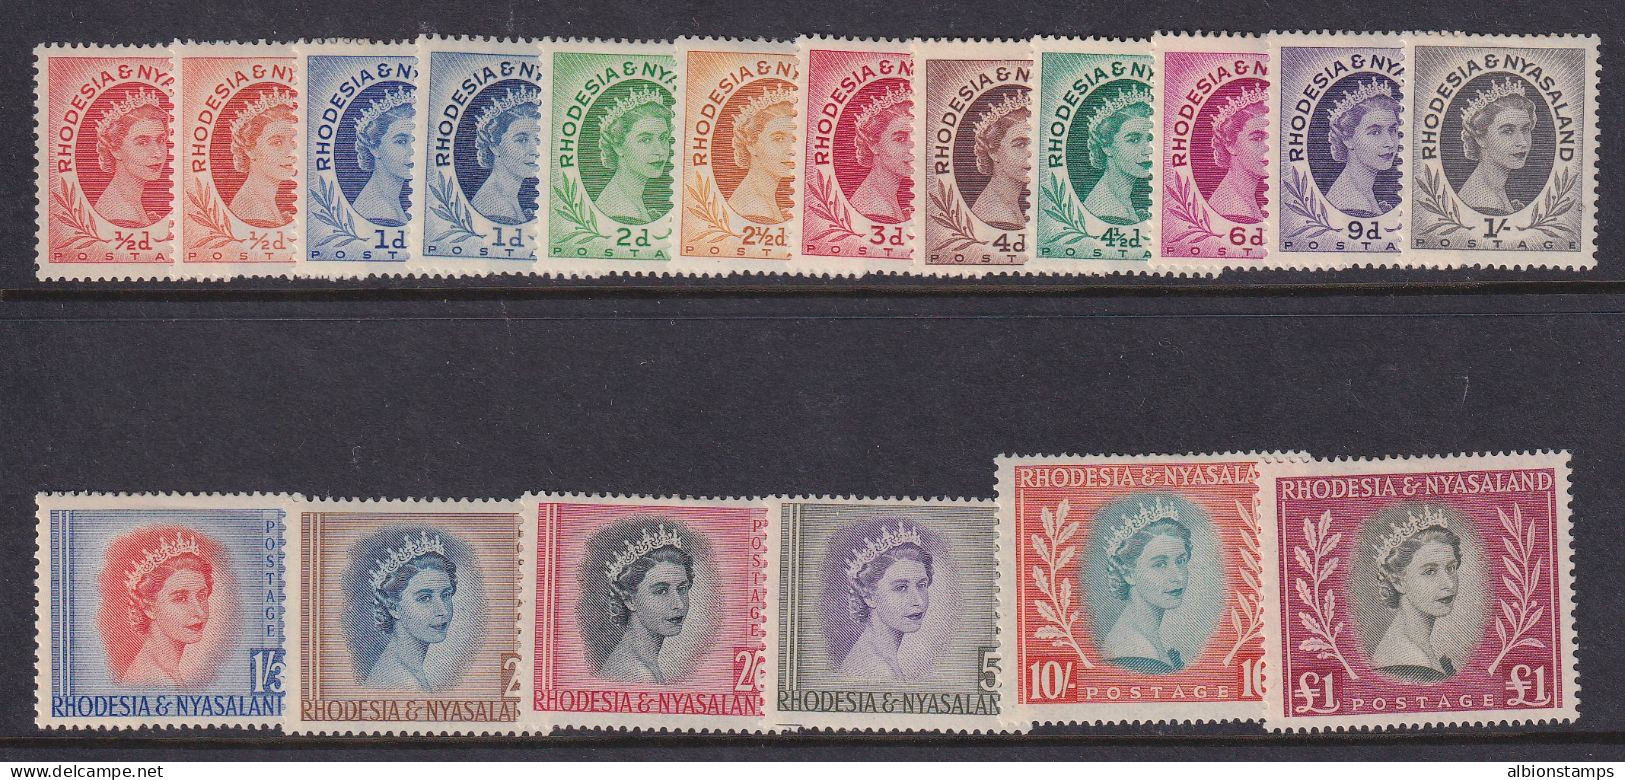 Rhodesia & Nyasaland, Scott 141-155 (SG 1-15), MLH - Rodesia & Nyasaland (1954-1963)